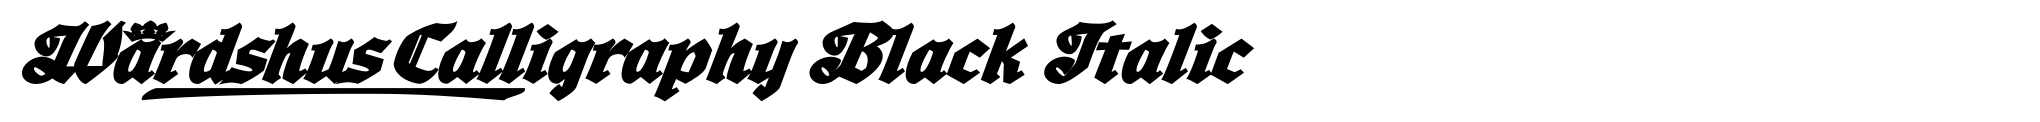 Wardshus Calligraphy Black Italic image